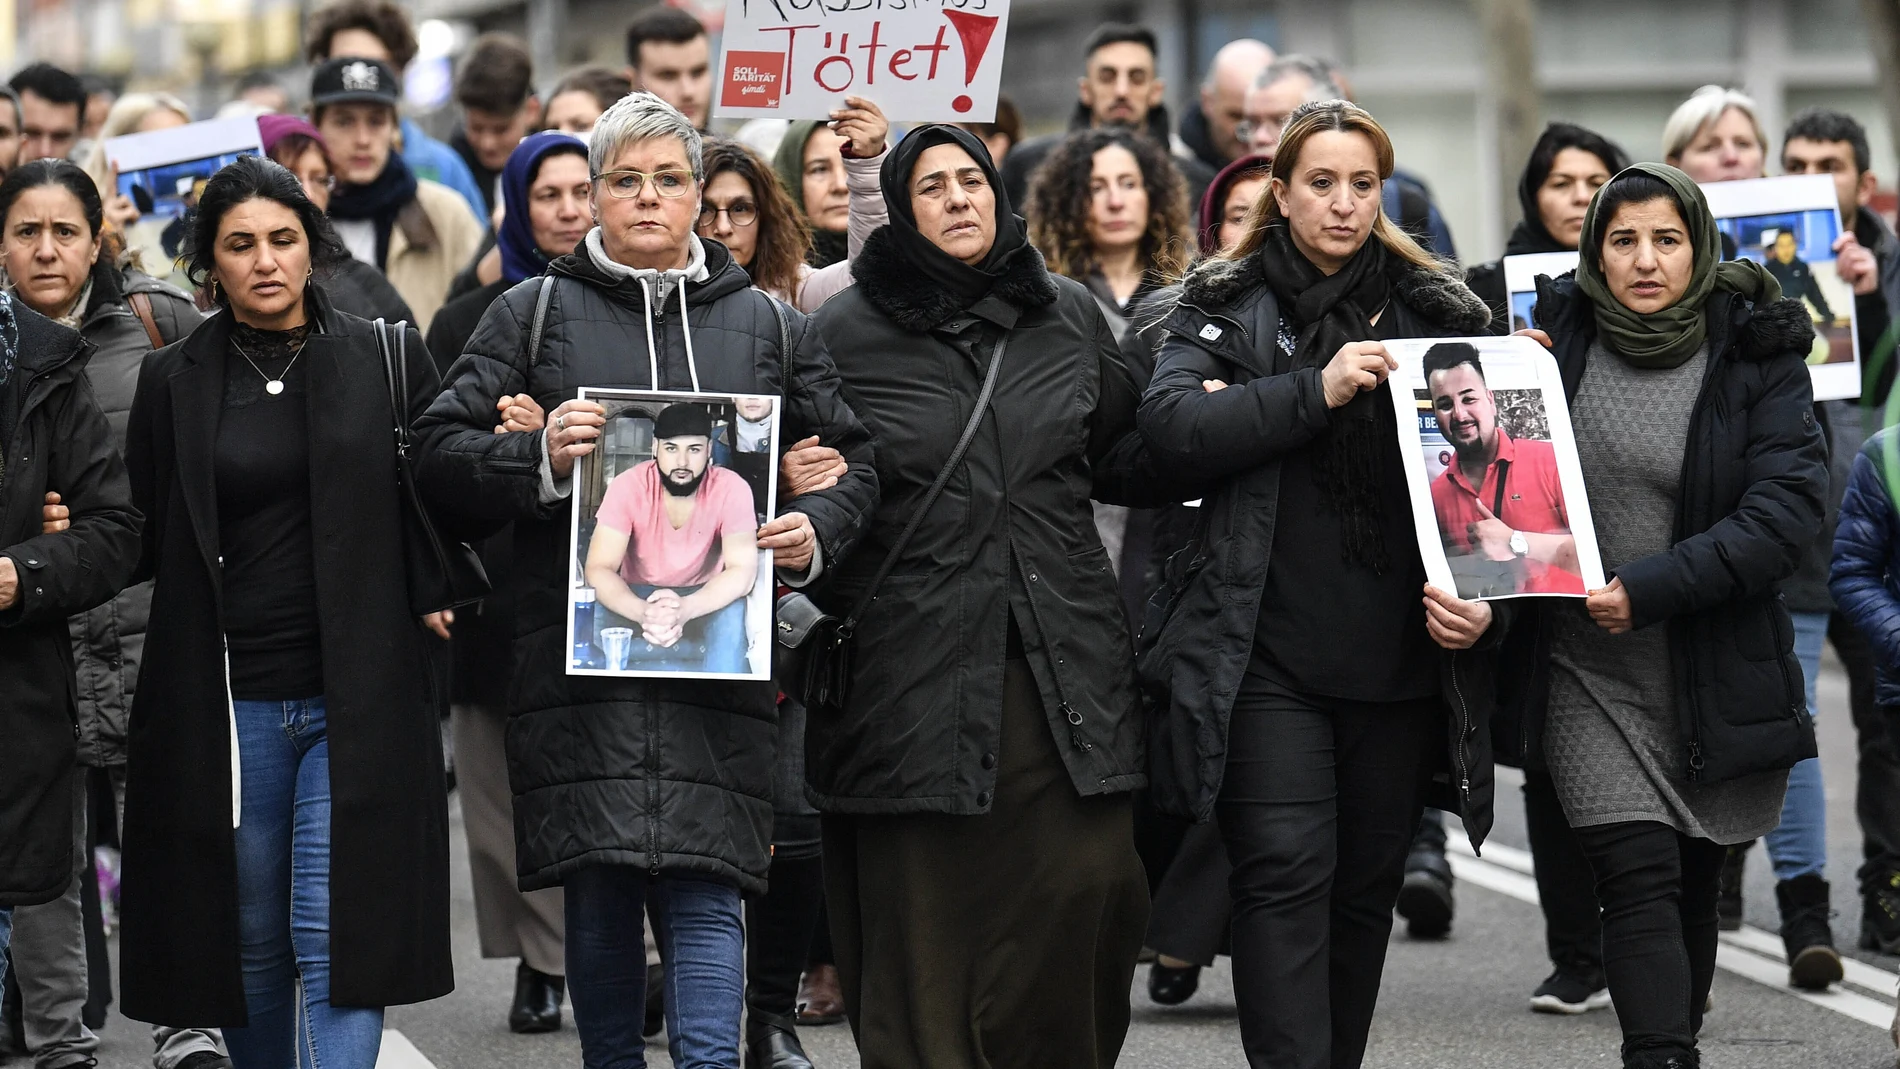 Amigos y familiares sostienen fotos de las víctimas de un tiroteo, en Hanau, Alemania, el viernes 21 de febrero de 2020. (Foto AP / Martin Meissner)